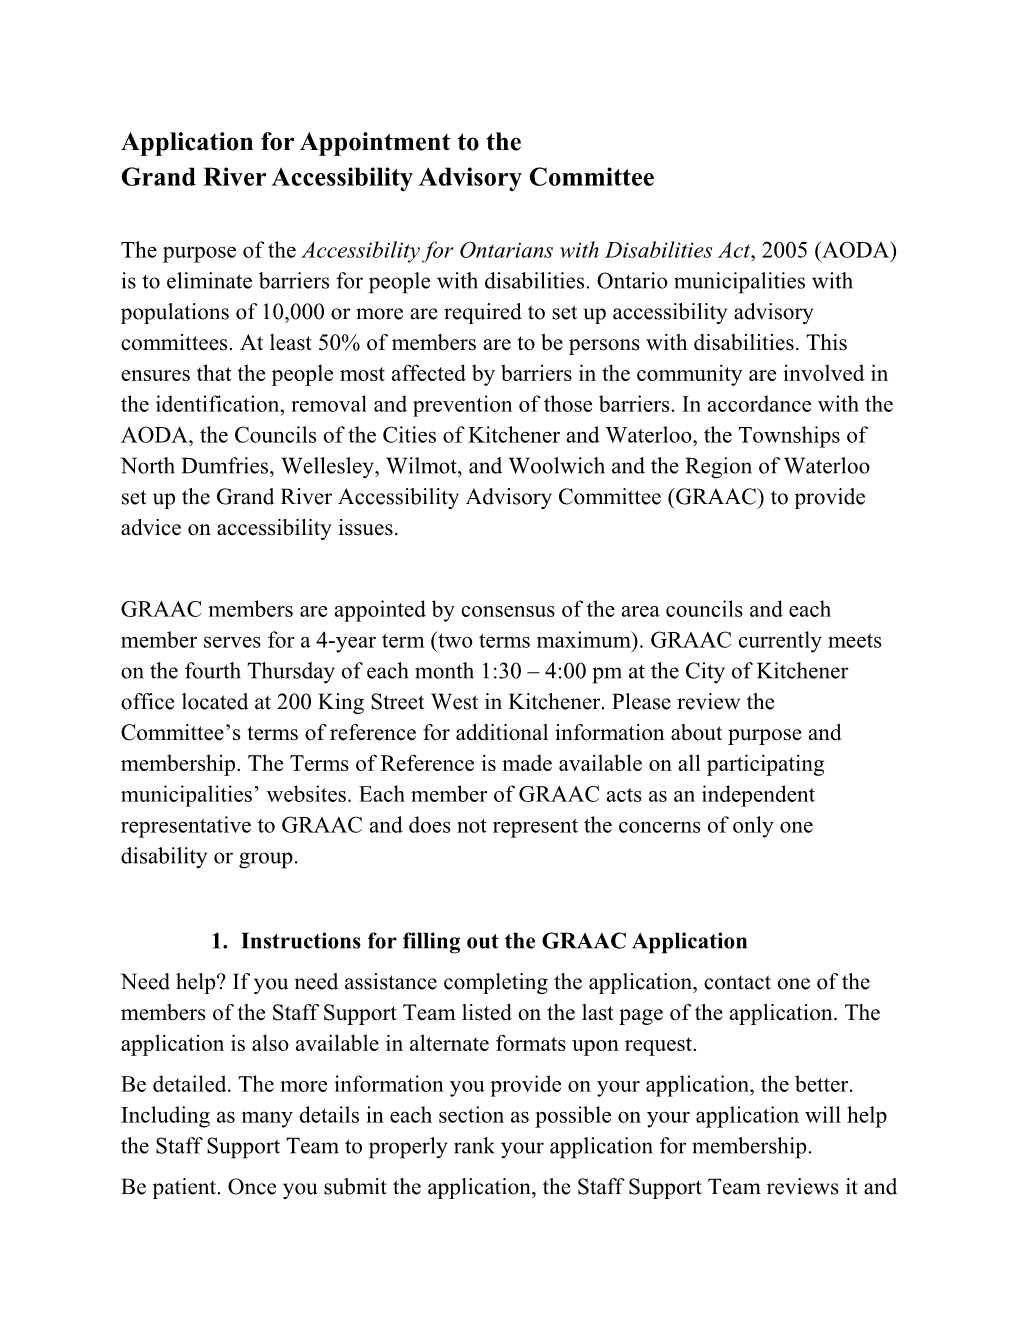 Committee GRAAC App 2003